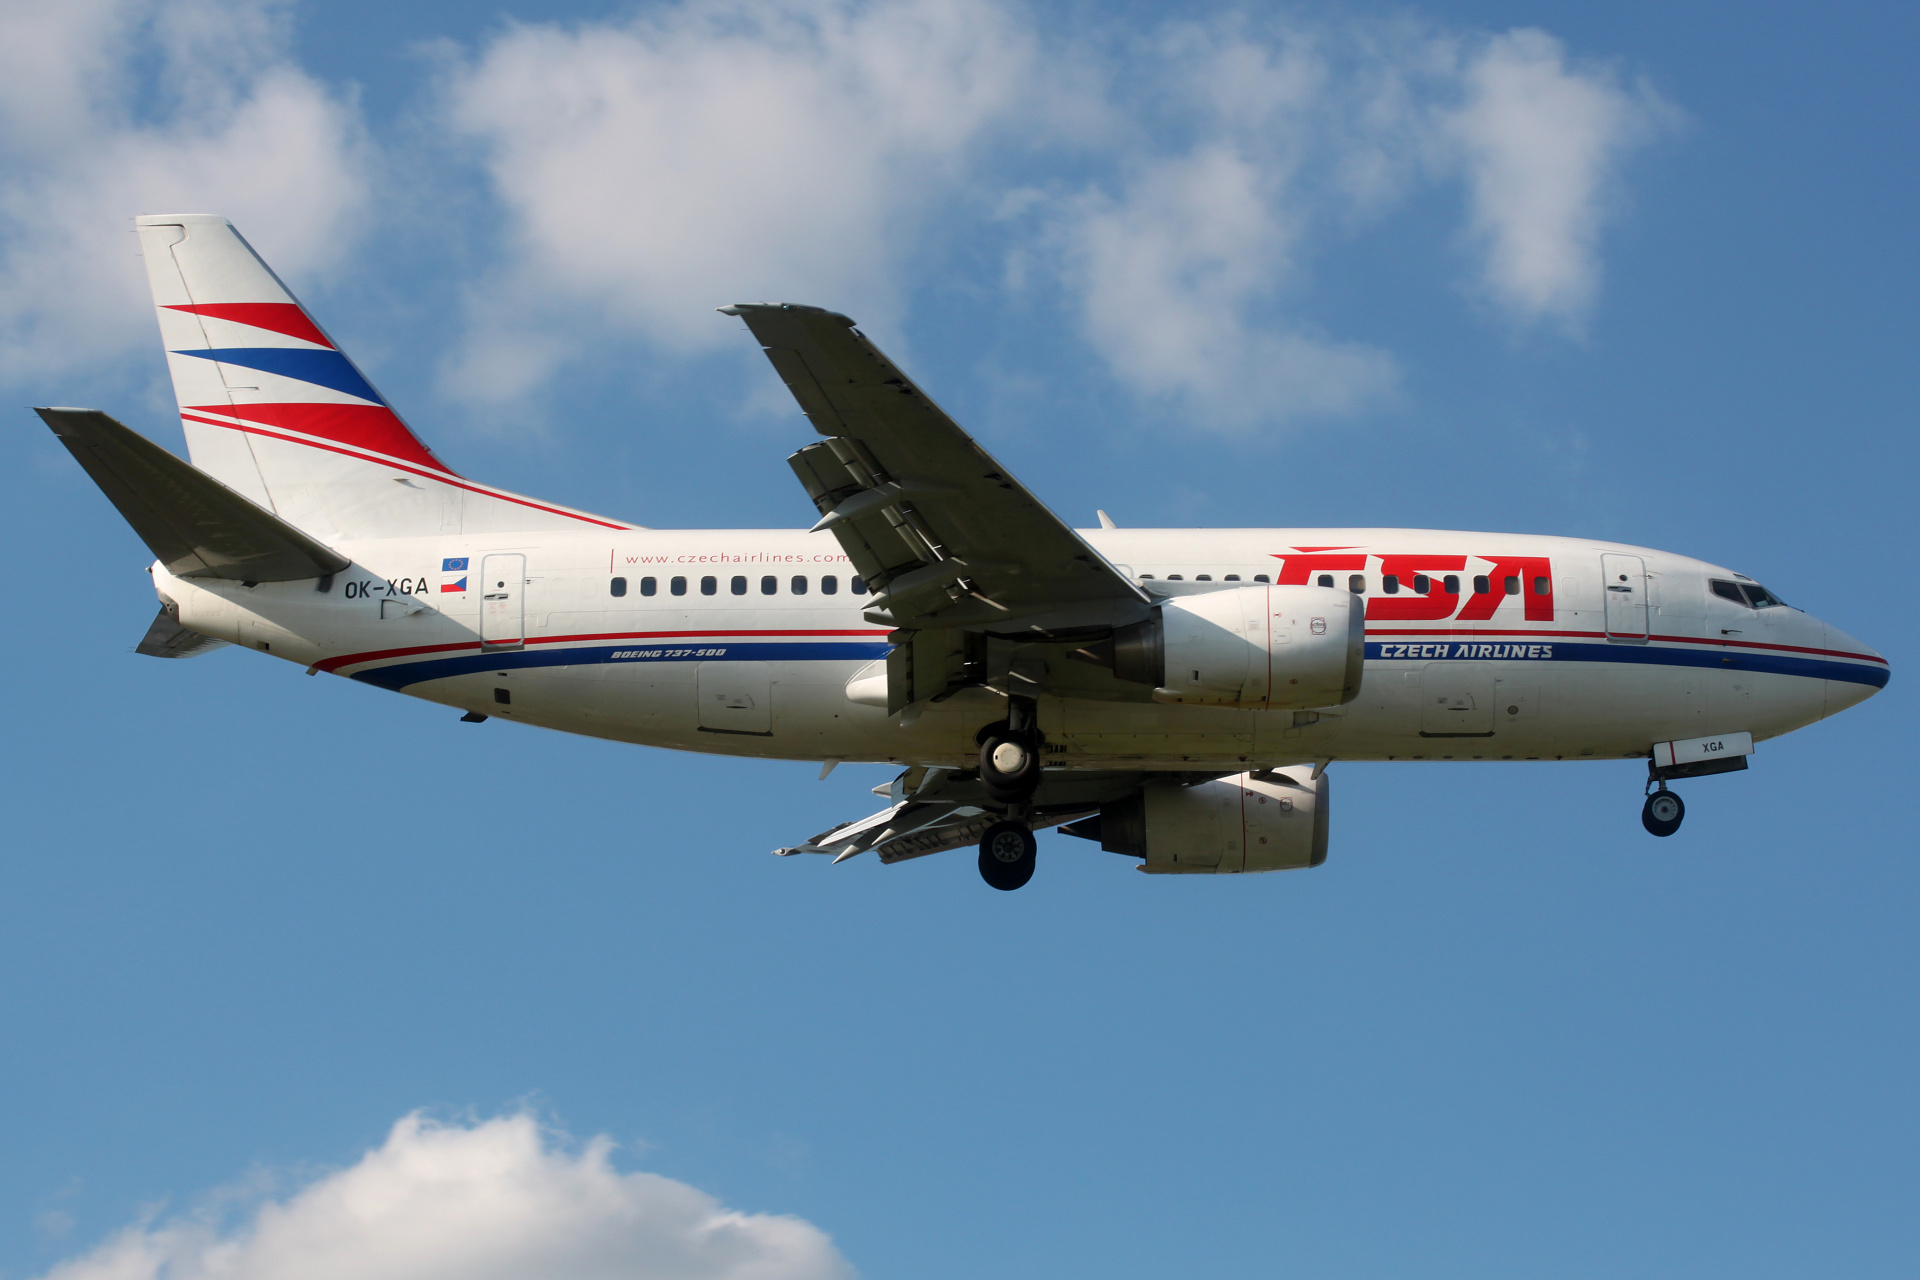 OK-XGA (Aircraft » EPWA Spotting » Boeing 737-500 » CSA Czech Airlines)